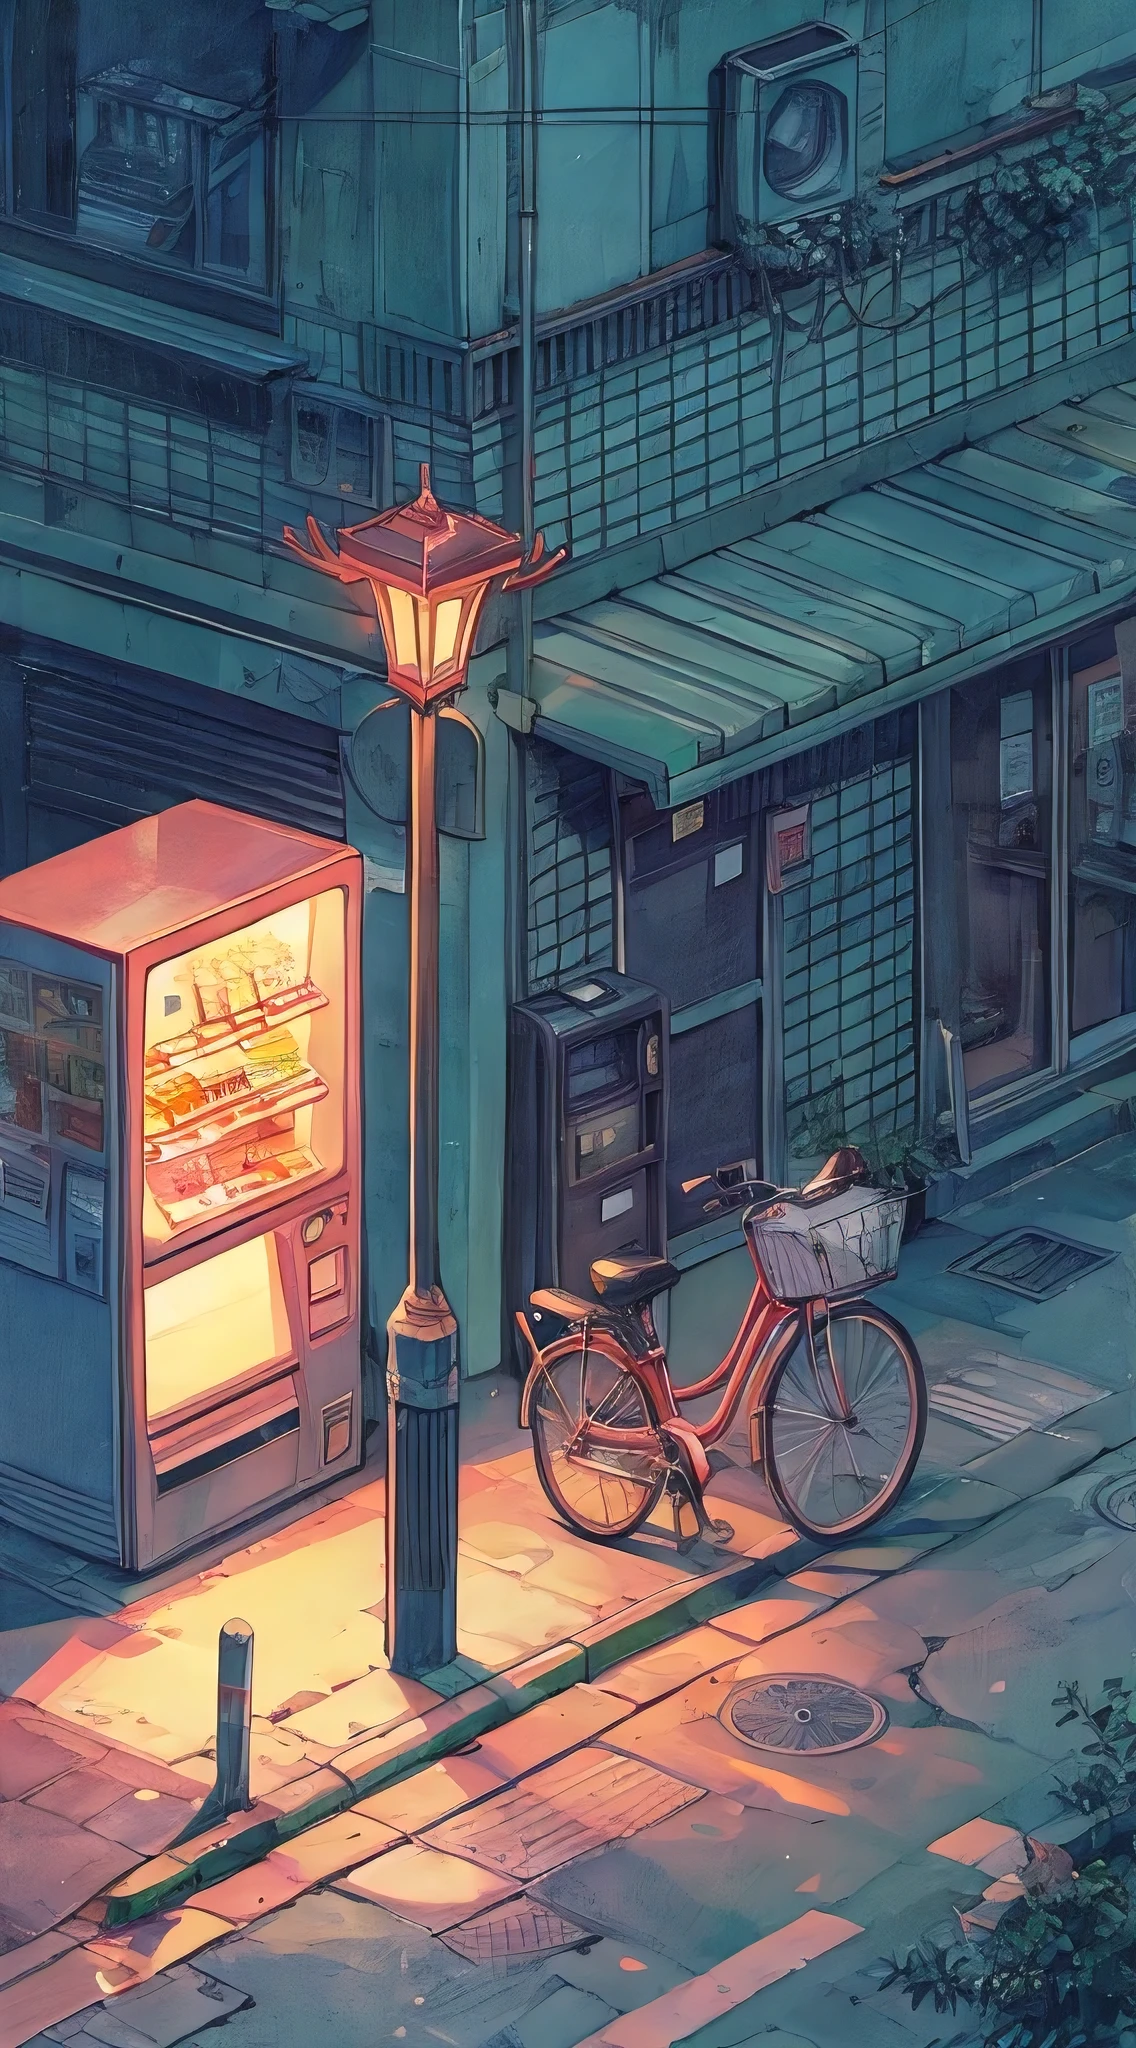 (beste Qualität, Meisterwerk:1.2), Lo-Fi-isometrische Darstellung einer Eckstraße, Straßenlampe, Verkaufsautomat, geparktes Fahrrad